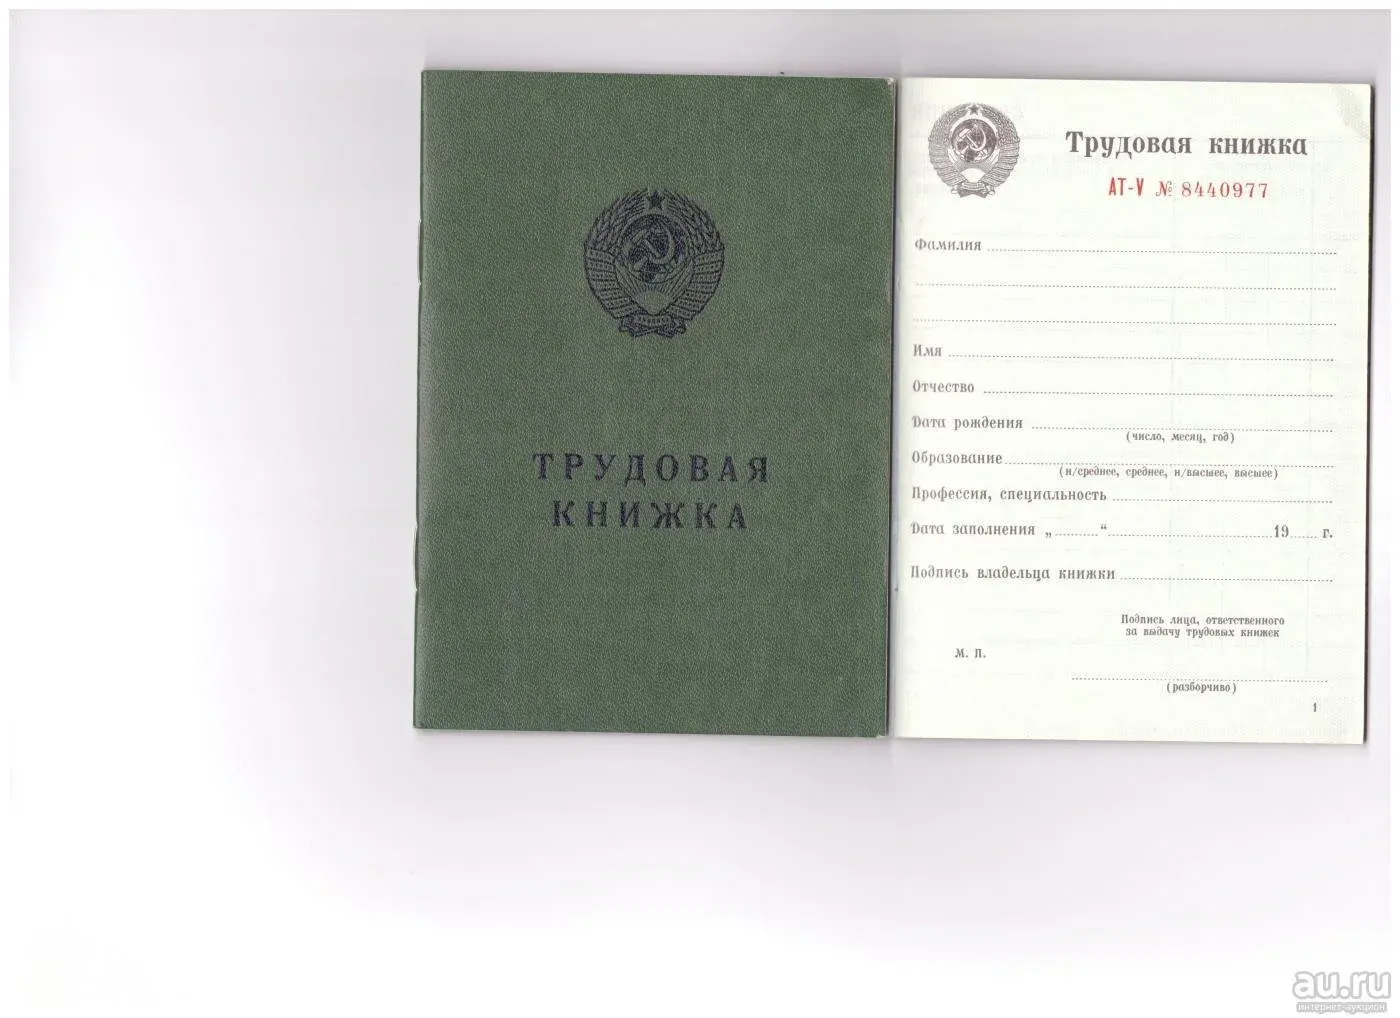 Где Купить Трудовую Книжку В Новосибирске